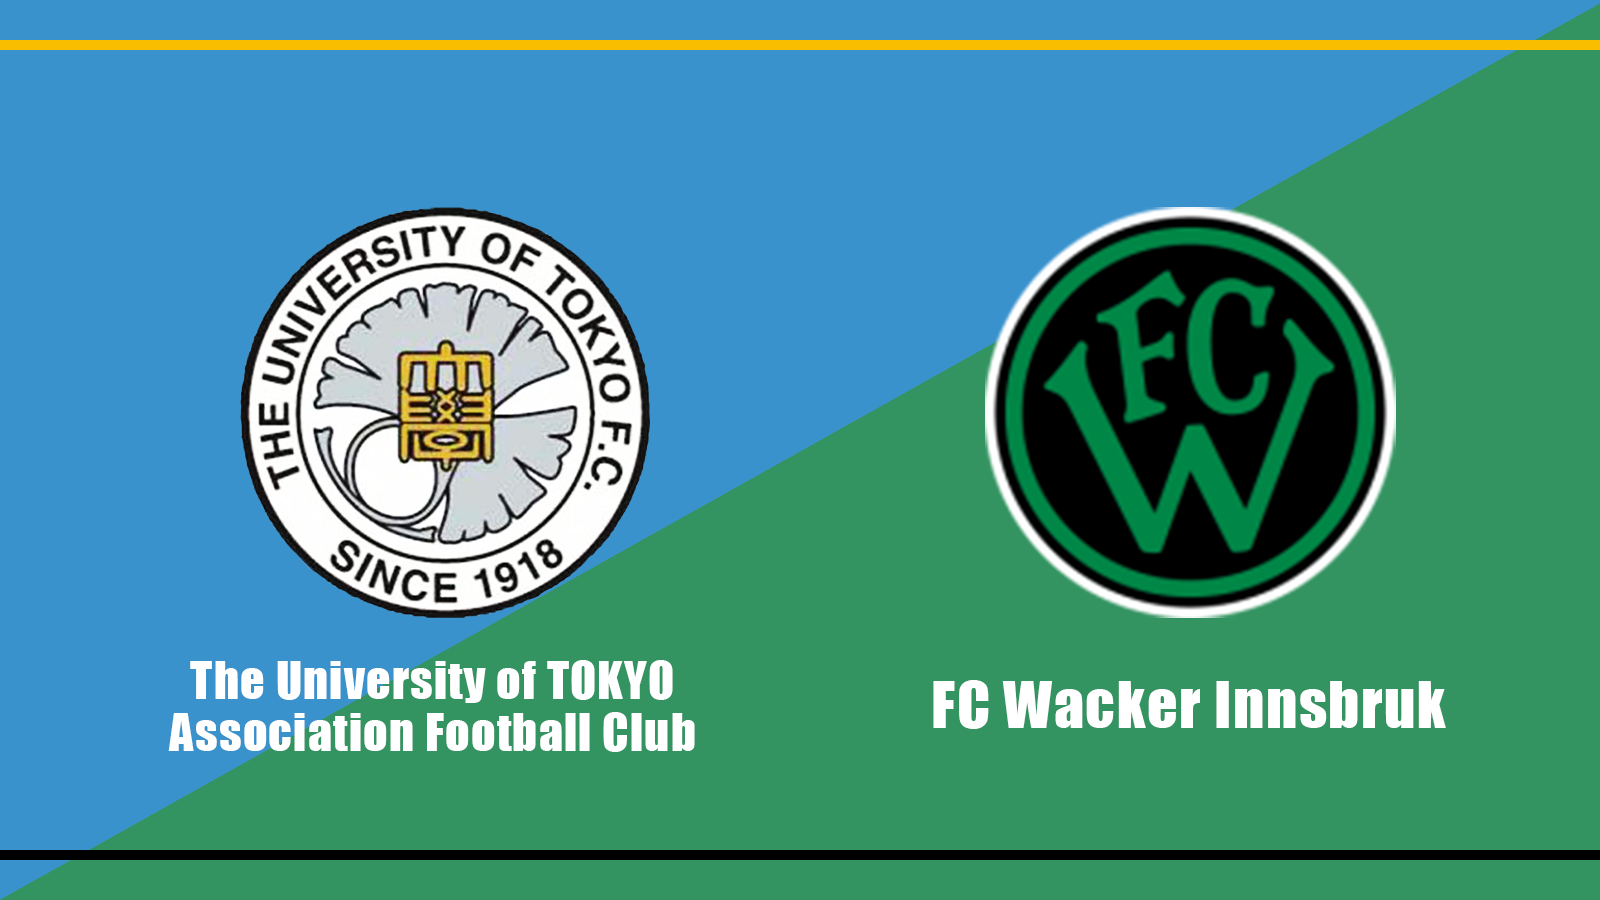 Fc Wacker Innsbruck 東大ア式 提携のお知らせ 東京大学運動会ア式蹴球部